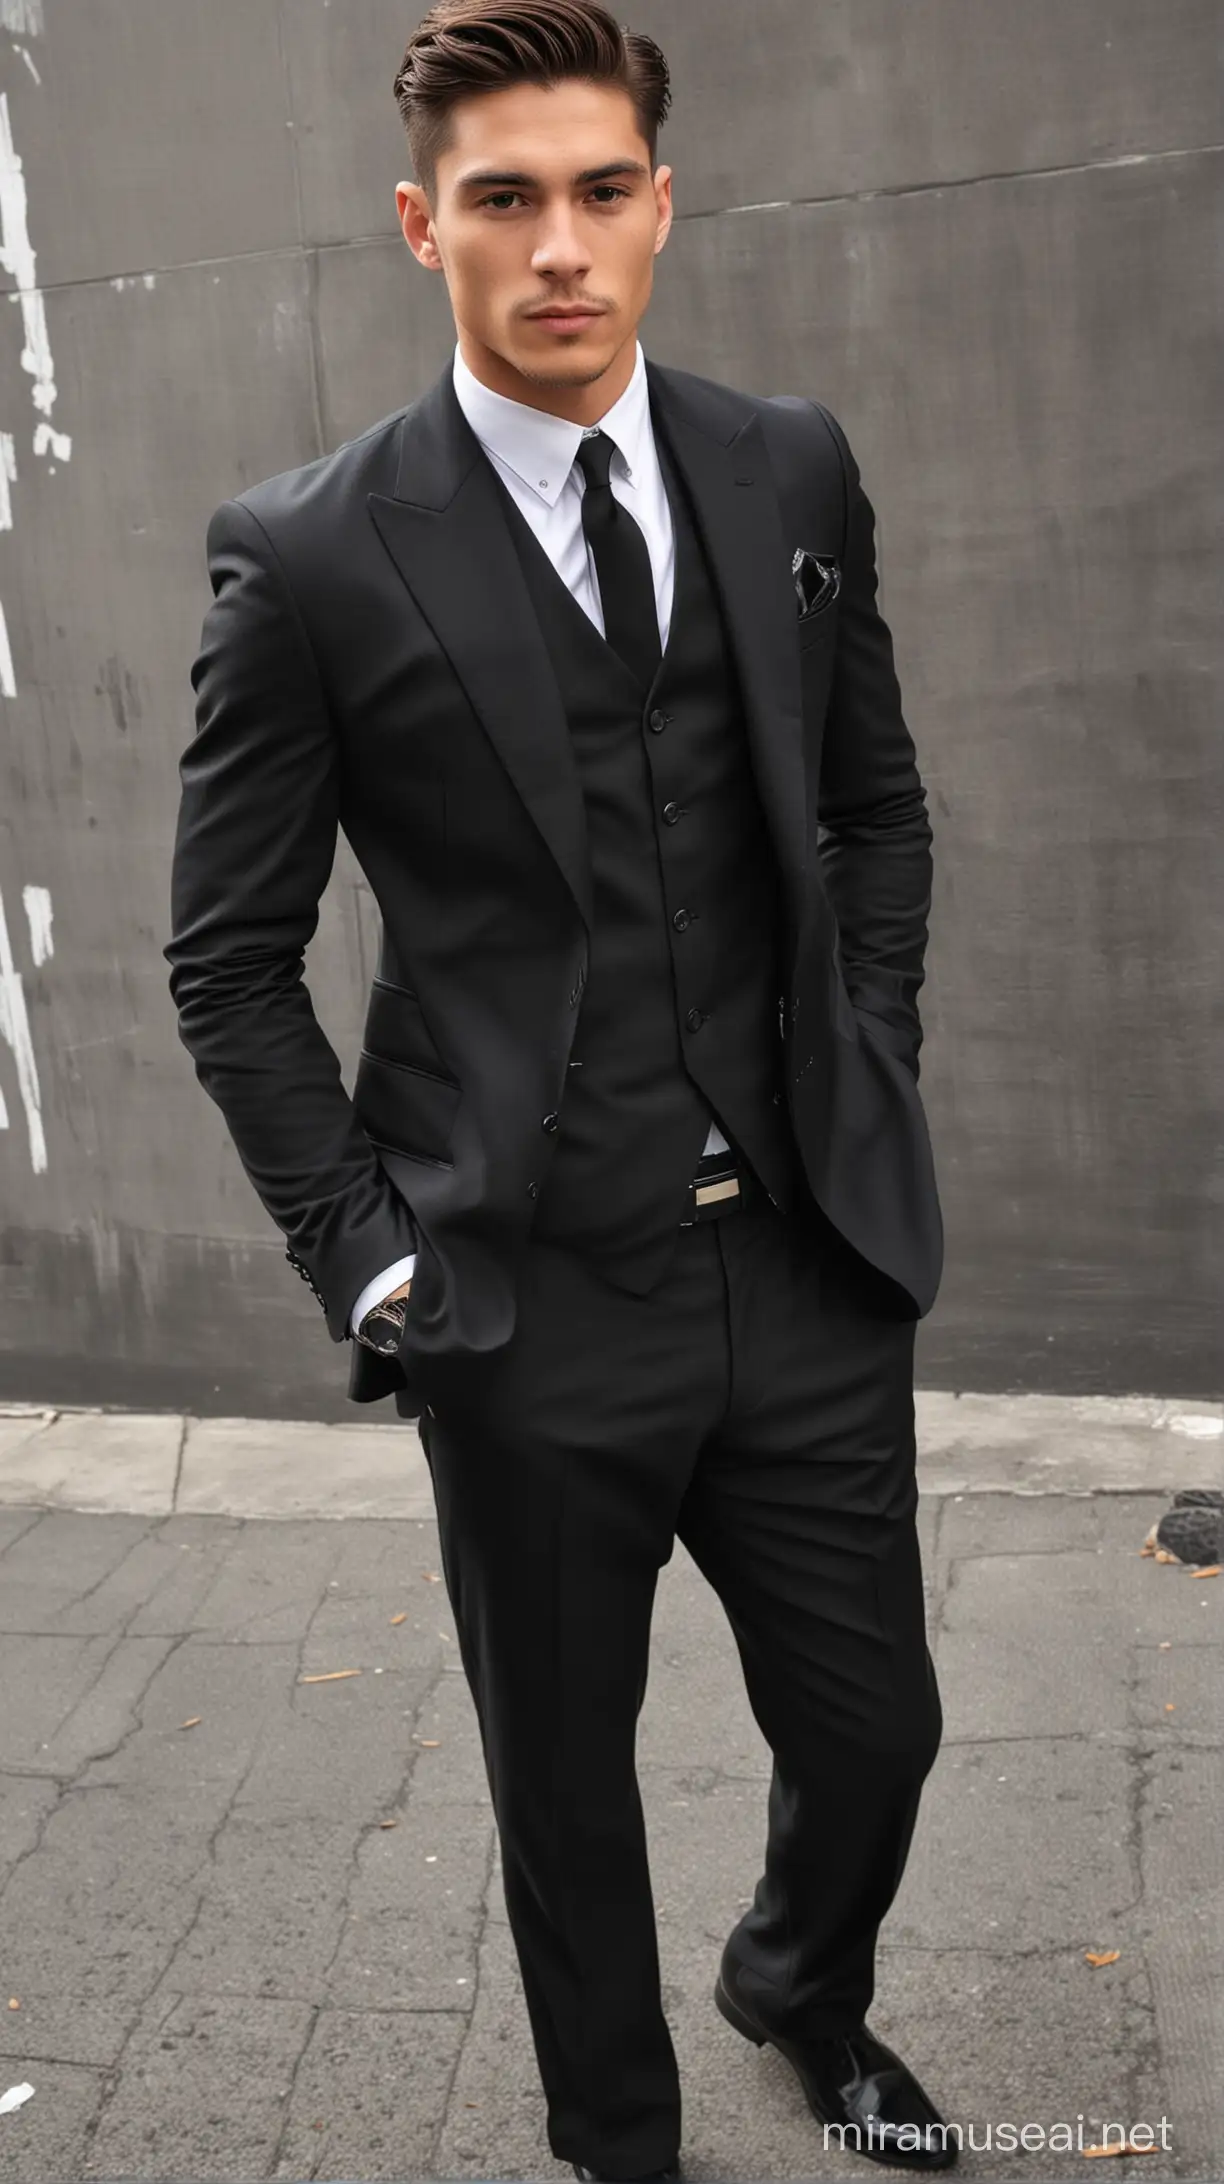 Stylish 25YearOld Mafia Boss in Elegant Black Suit